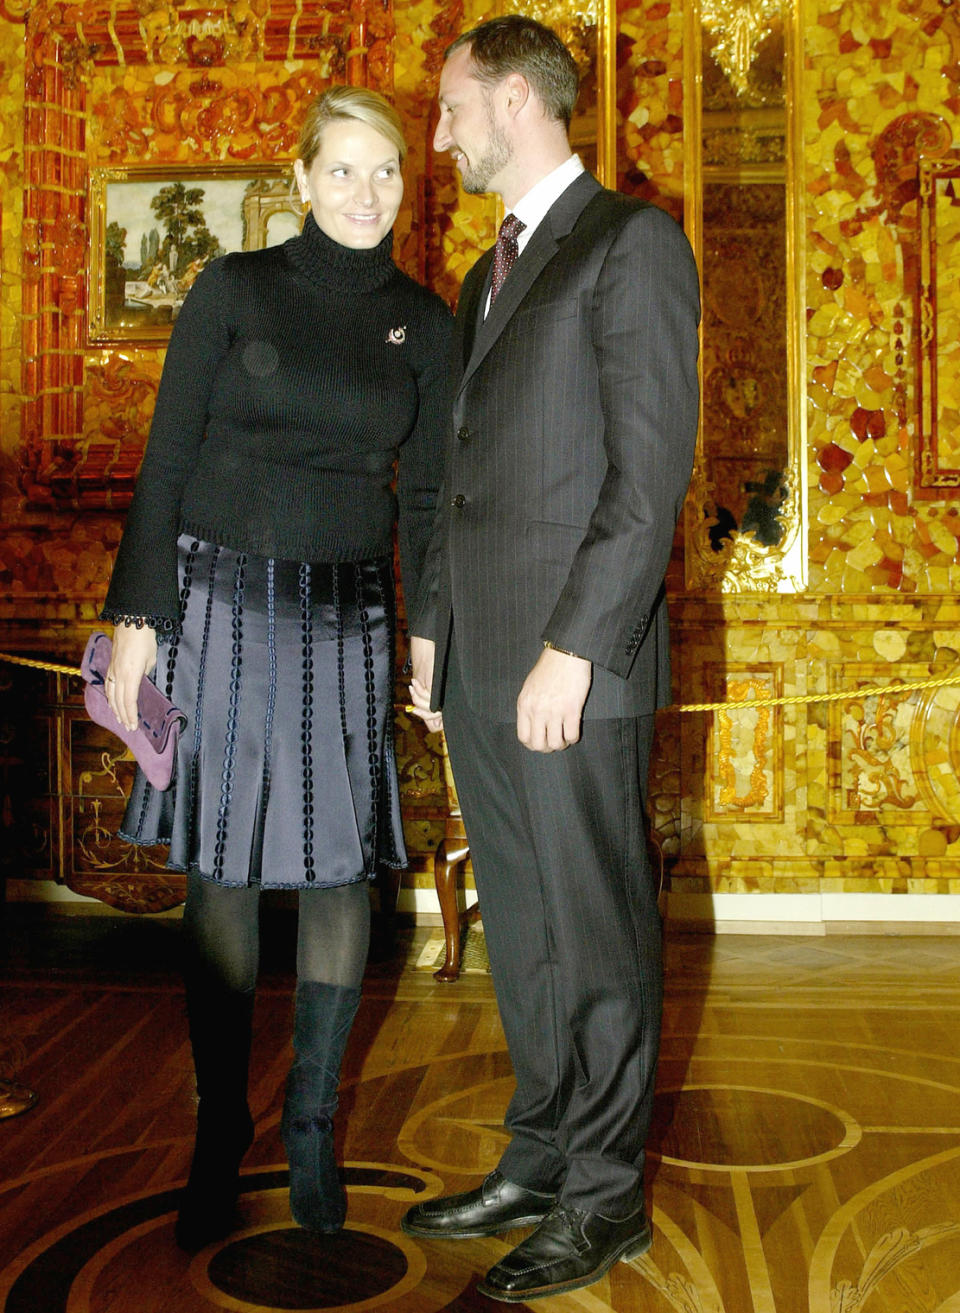 Ein schwarzer, engsitzender Rollkragenpullover und blickdichte Strumpfhosen – 2003 besuchte Prinz Haakon mit seiner Frau das Bernsteinzimmer in Russland. Dem reich verzierten Raum konnte die blonde Prinzessin allerdings nicht die Show stehlen.